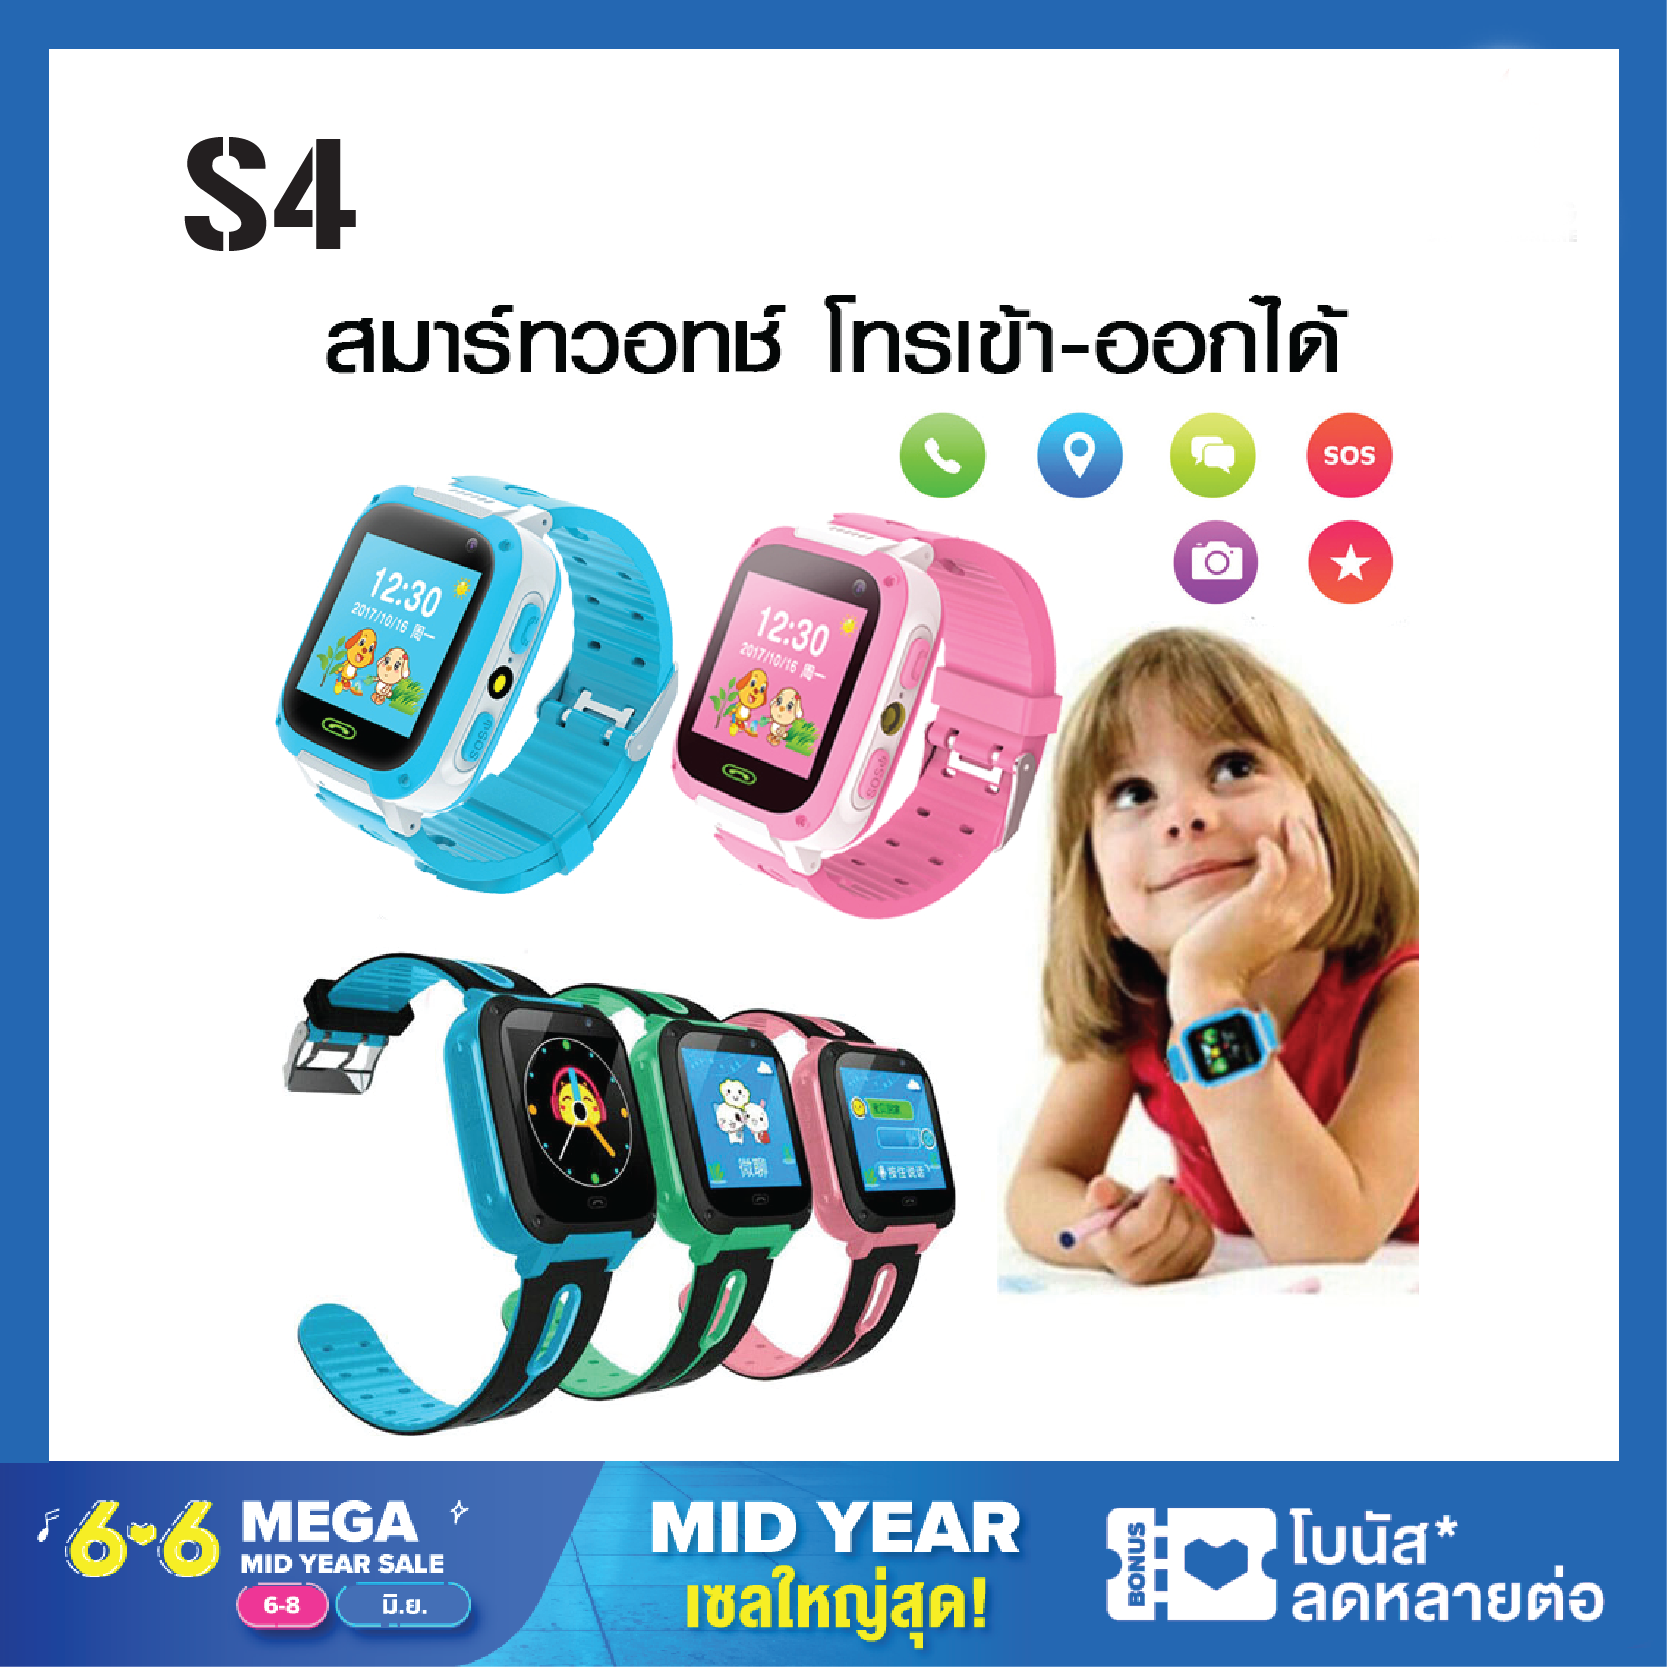 นาฬิกาเด็ก นาฬิกาโทรศัพท์เด็ก อัจฉริยะ S4 สมาร์ทวอท์ชเด็ก ใส่ซิมโทรฯได้ สำหรับเด็ก Smart Watch รองรับภาษาไทย  กันน้ำ GPS บอกตำแหน่ง ไฟฉาย กล้อง บลูทูธ พร้อมจัดส่ง